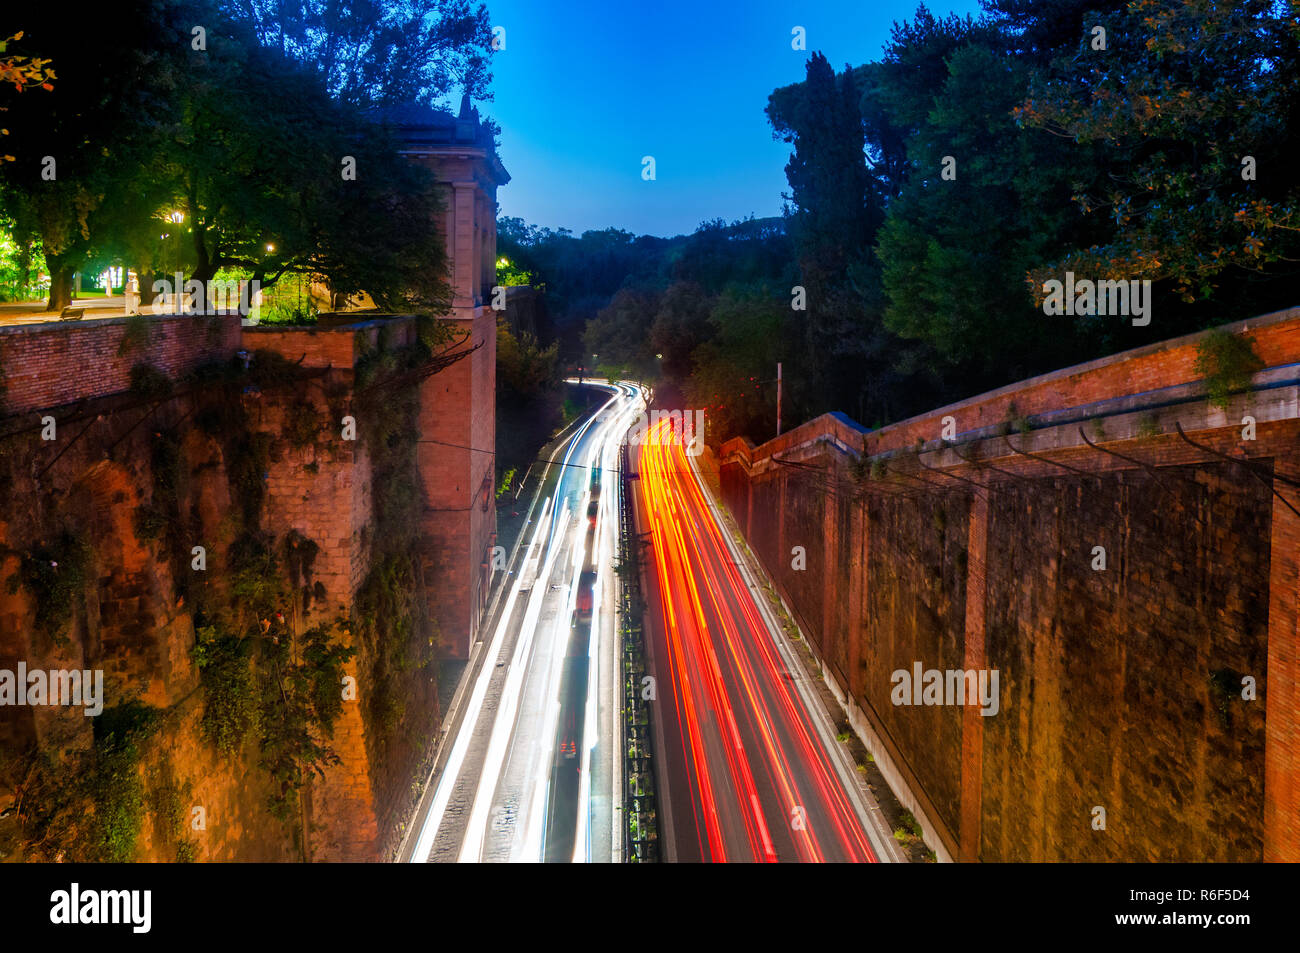 View of Viale del Muro Torto from the Terazza del Pincio, Rome Italy Stock Photo